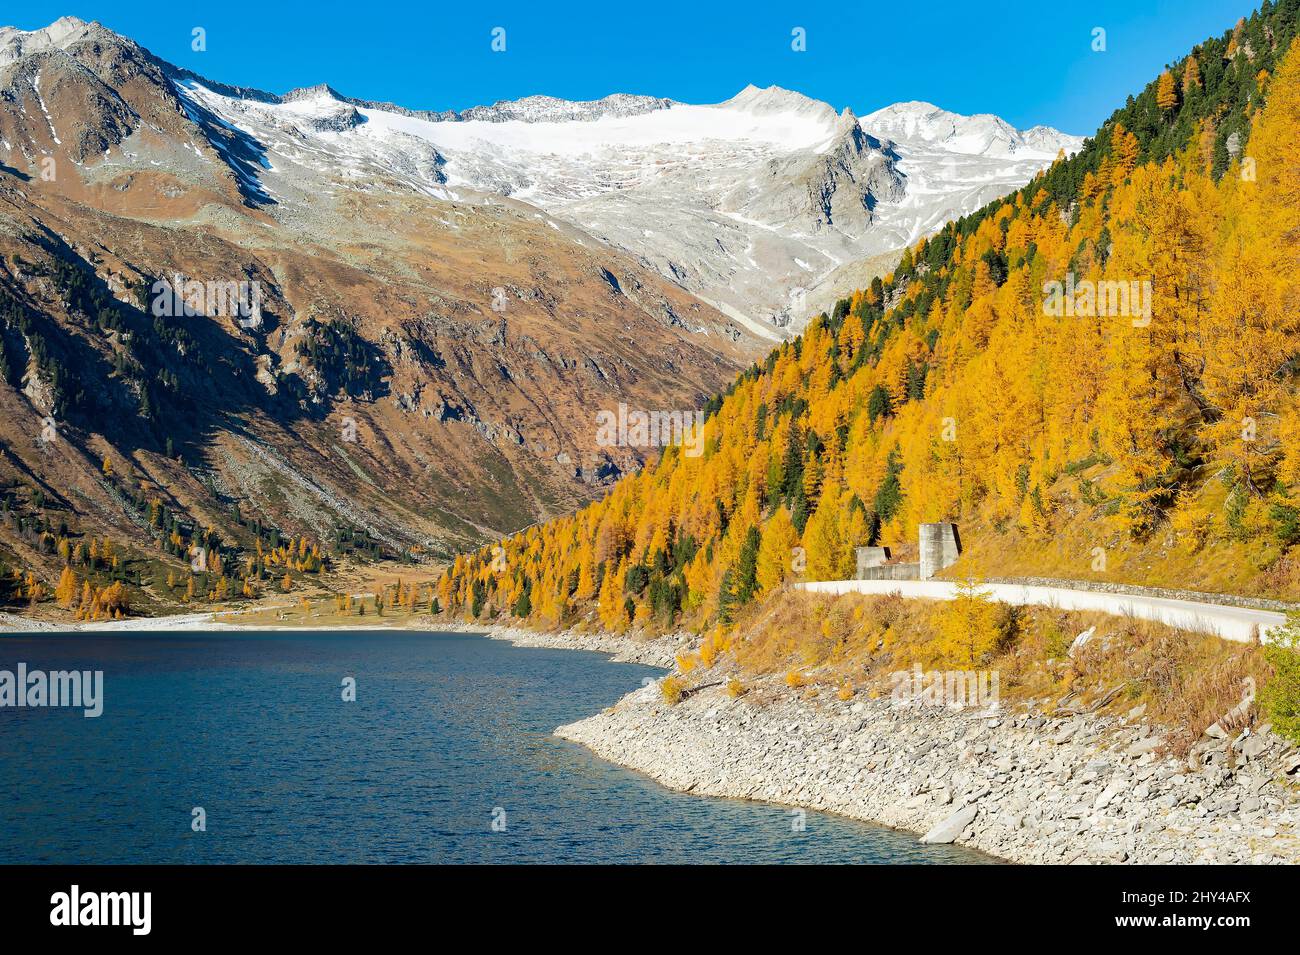 Route de montagne pittoresque dans les Alpes, lac bleu, pistes couvertes de forêt, sommets enneigés de montagne dans la lumière ensoleillée de l'automne, Autriche Banque D'Images